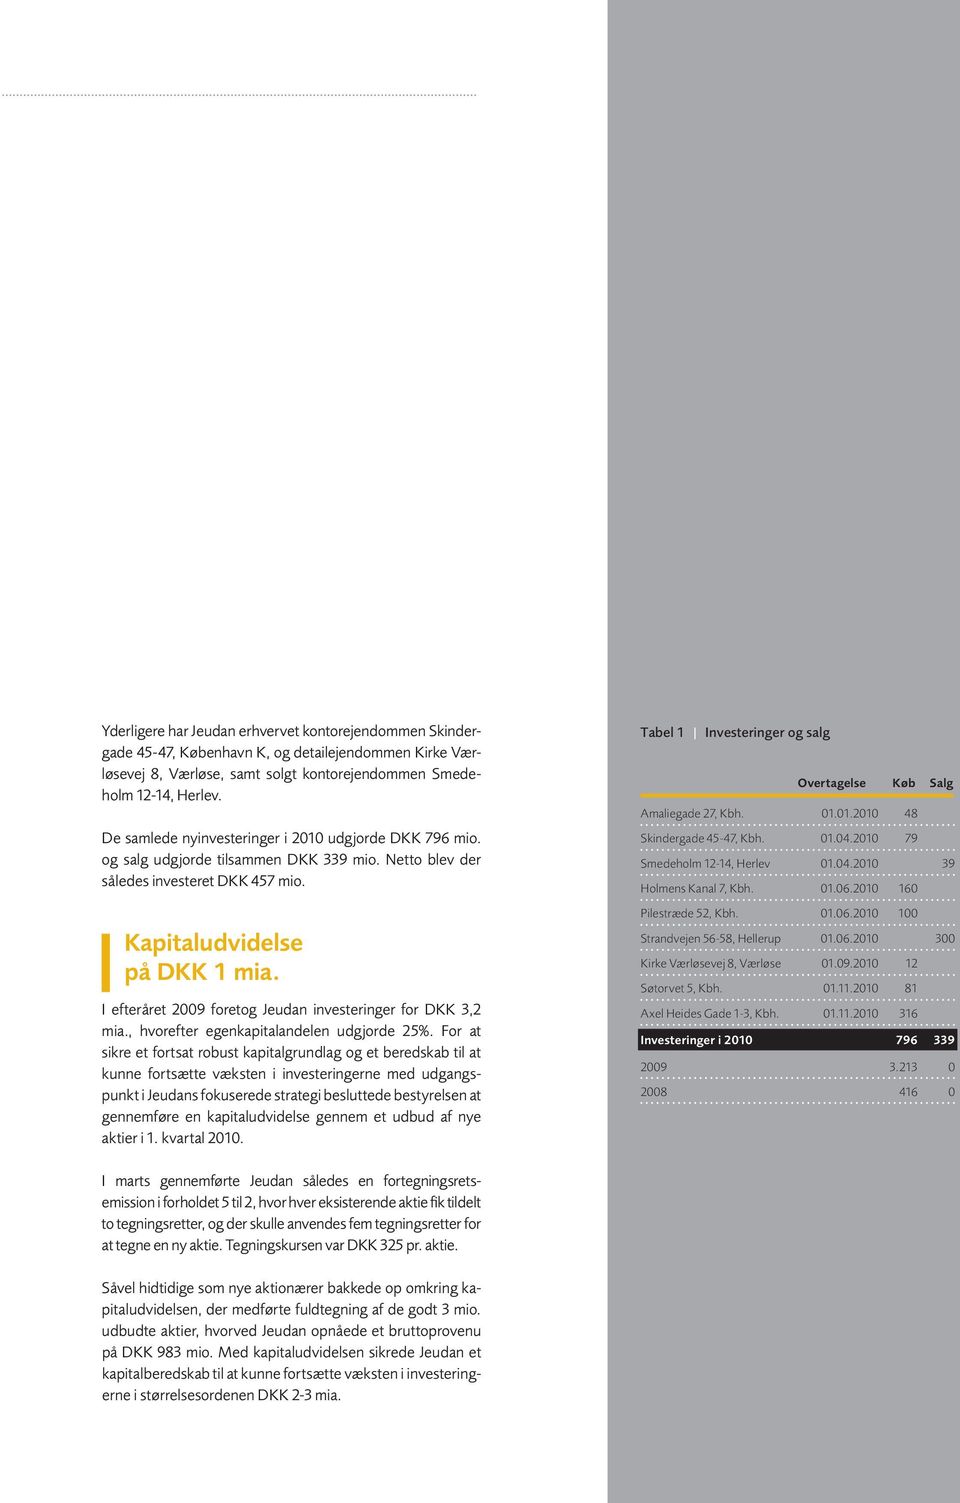 I efteråret 2009 foretog Jeudan investeringer for DKK 3,2 mia., hvorefter egenkapitalandelen udgjorde 25%.